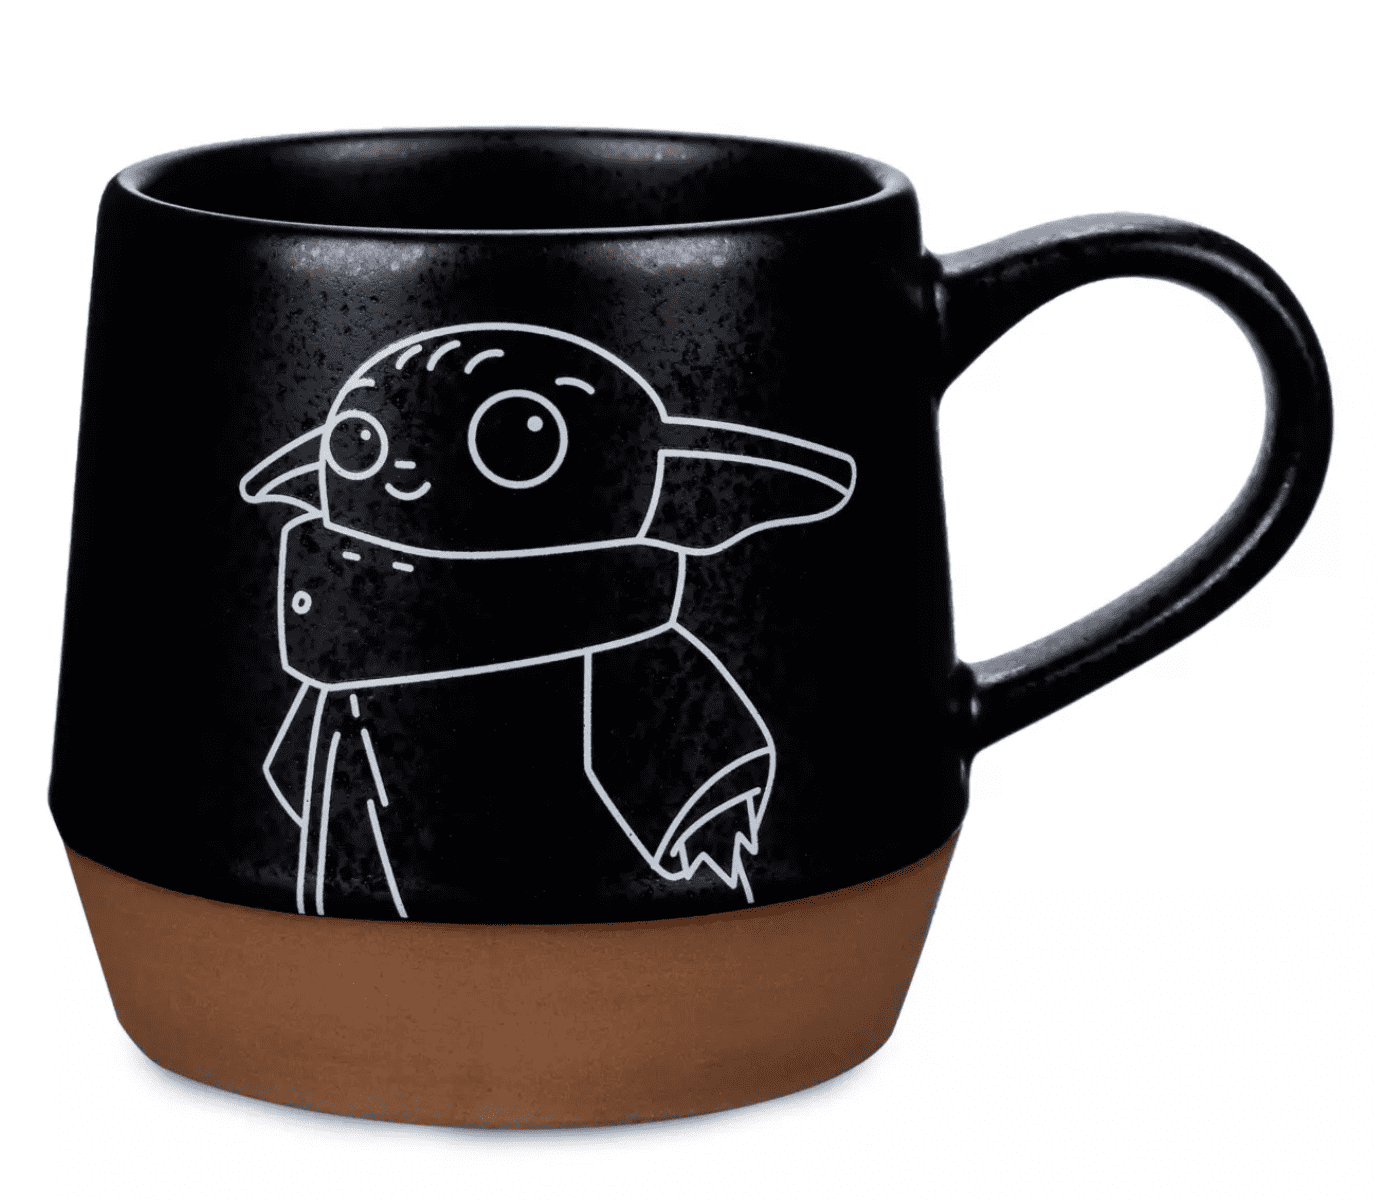 Grogu Mug, Choose your team Potter Espresso Patronum Mug, Ag - Inspire  Uplift